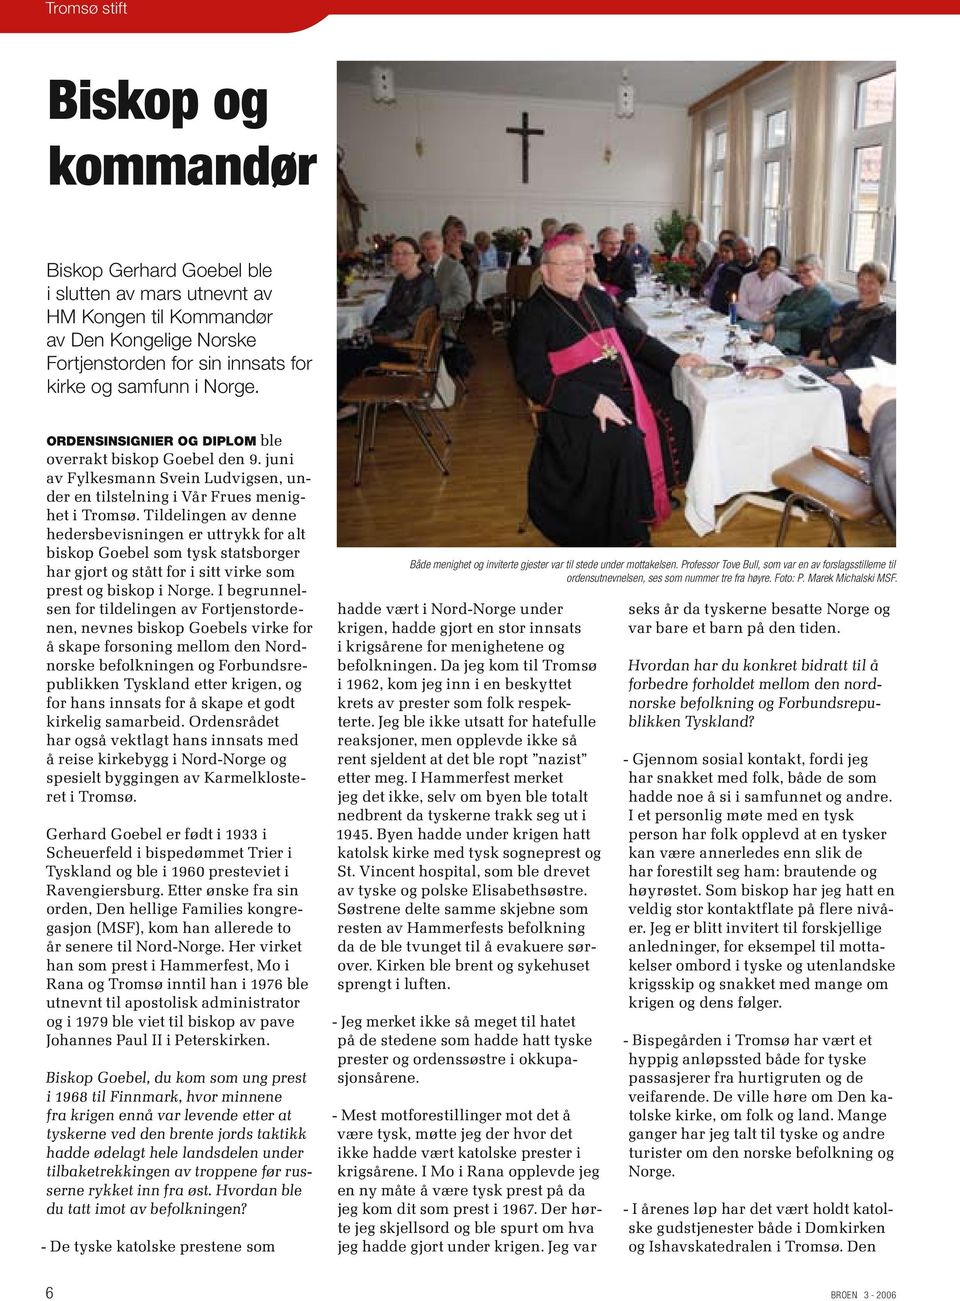 Tildelingen av denne hedersbevisningen er uttrykk for alt biskop Goebel som tysk statsborger har gjort og stått for i sitt virke som prest og biskop i Norge.